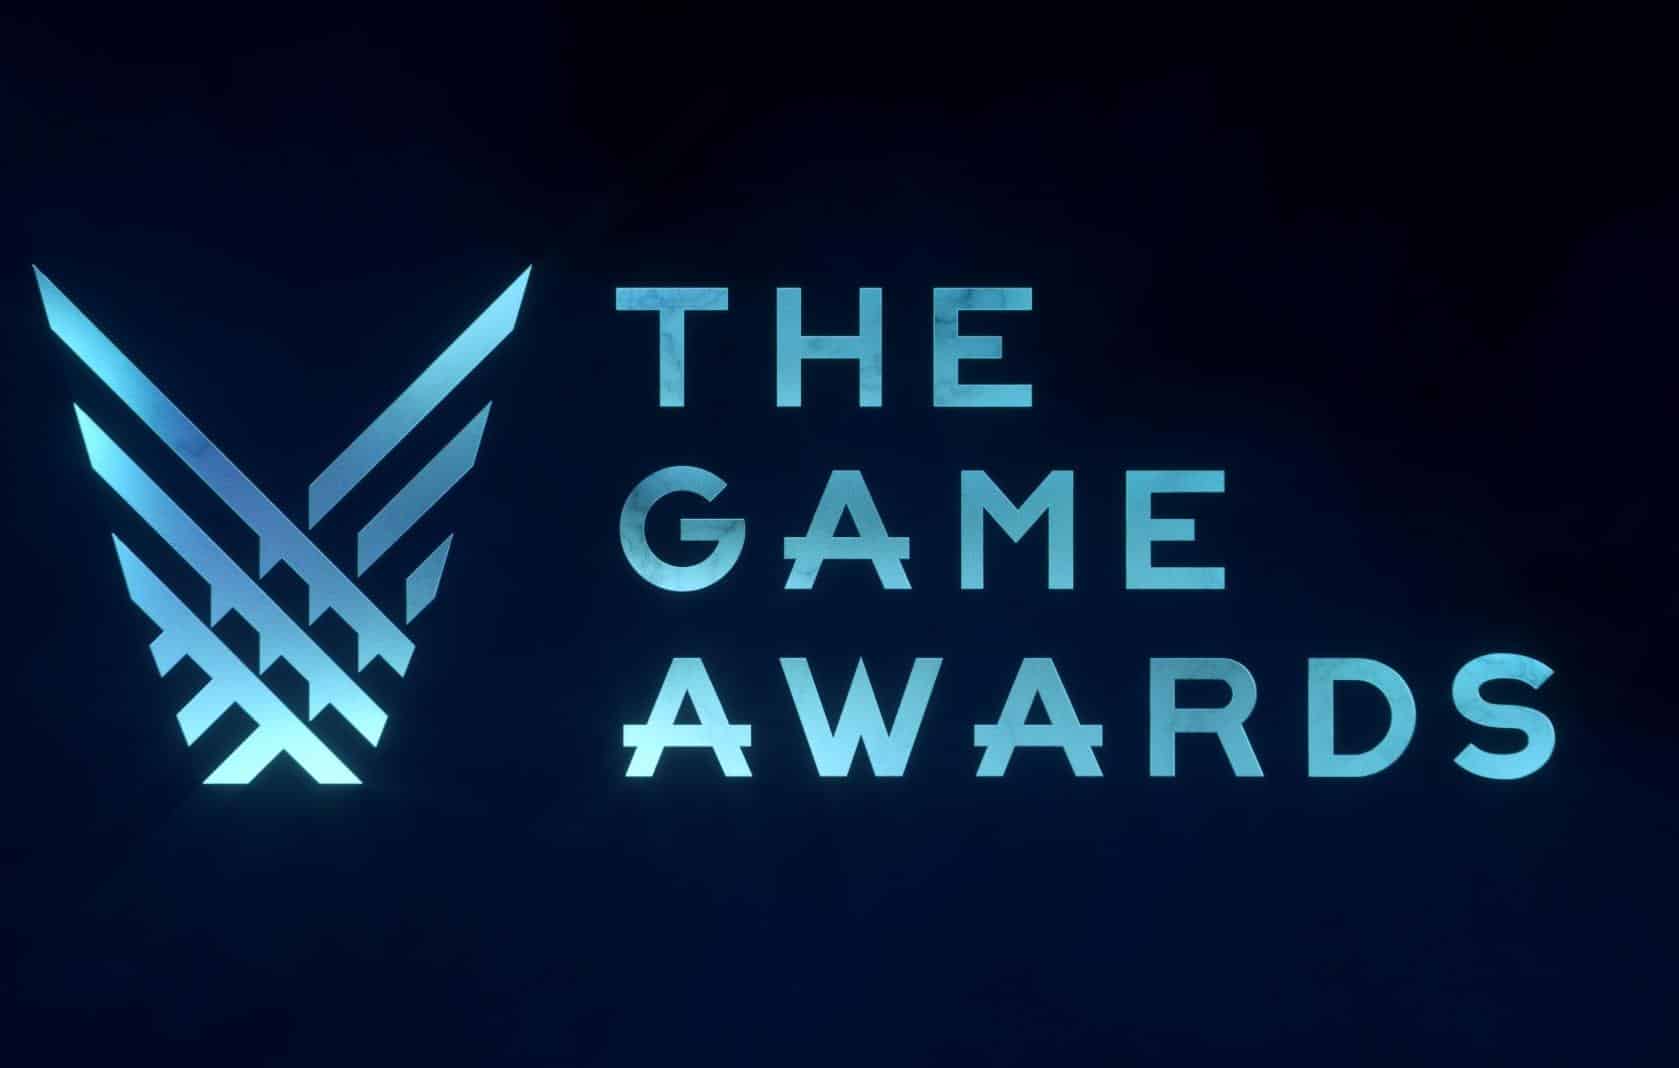 Brazil Game Awards 2019: confira os jogos vencedores em todas as categorias  